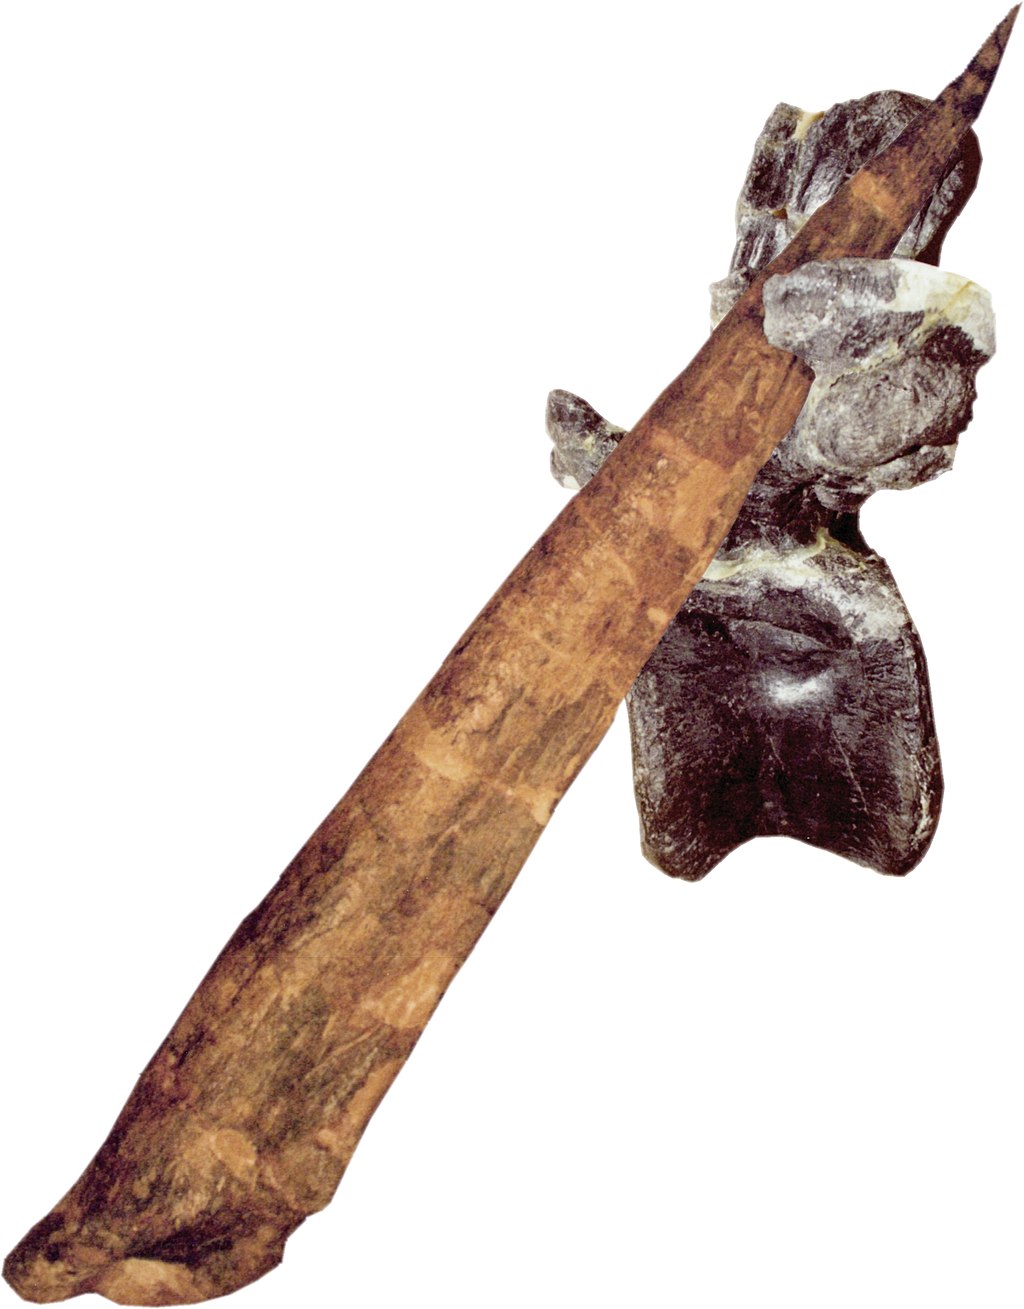 Rekonstrukce průniku ocasního bodce stegosaura ocasním obratlem dravého alosaura. Extrémní sílu tohoto úderu dokládá poškození transverzálního (příčného) výběžku obratle, z něhož se značná část odlomila a okolní kostní hmota zasažená infekcí se pozdě